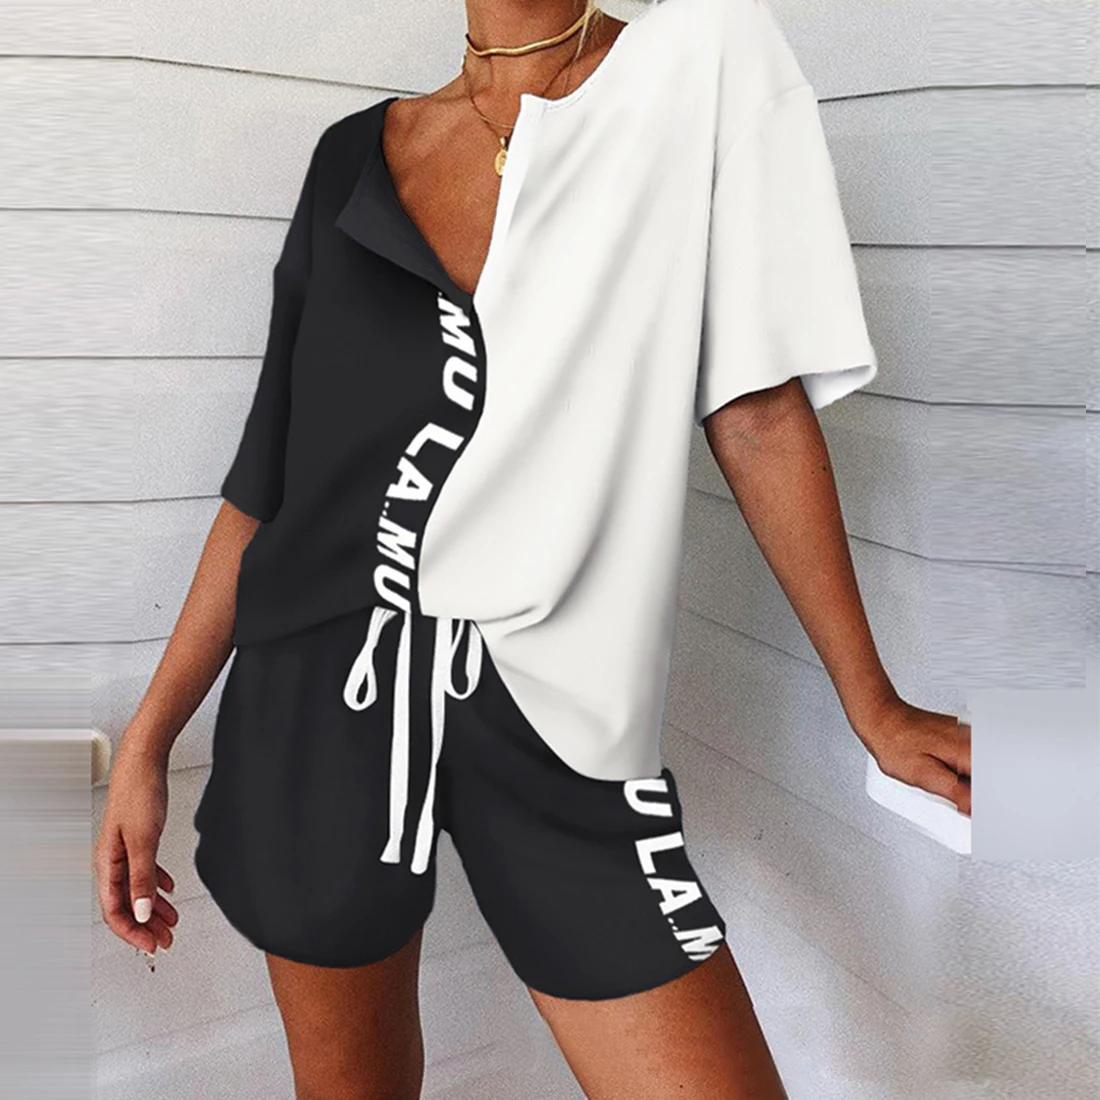 Las mujeres de Impresión de Conjunto de Pijama de Verano Tie-Dye 2 piezas del Conjunto de las Mujeres Chándal, Camiseta de Trajes de Mujer Casual Trajes de 2020 V-la parte Superior del cuello 1